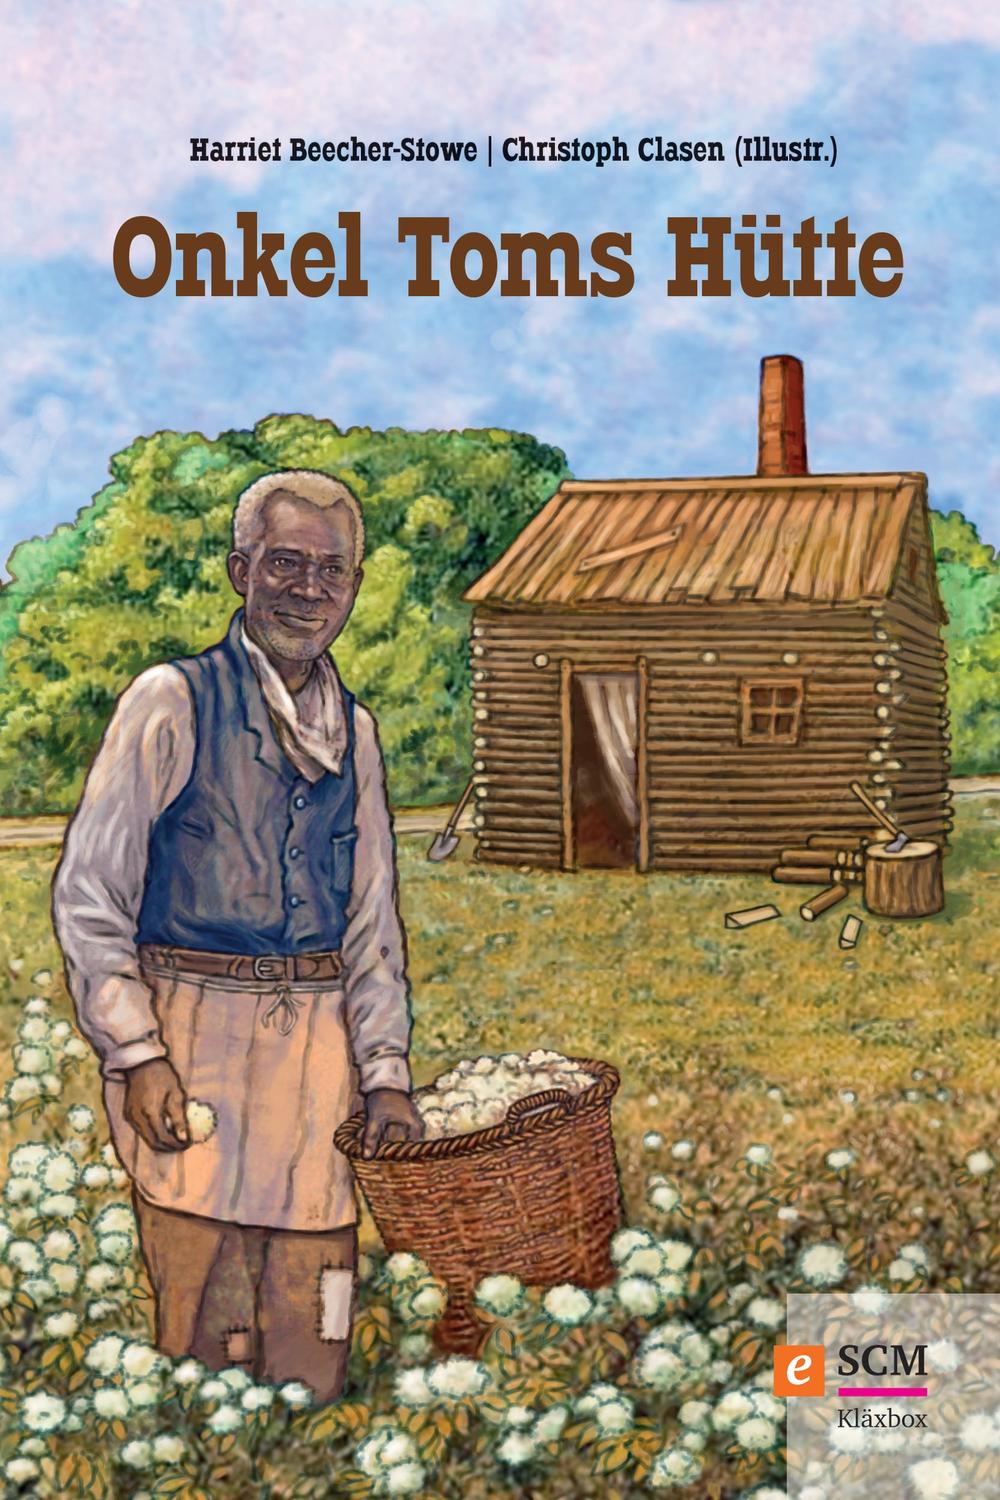 Onkel Toms Hütte - Harriet Beecher-Stowe, Christoph Clasen